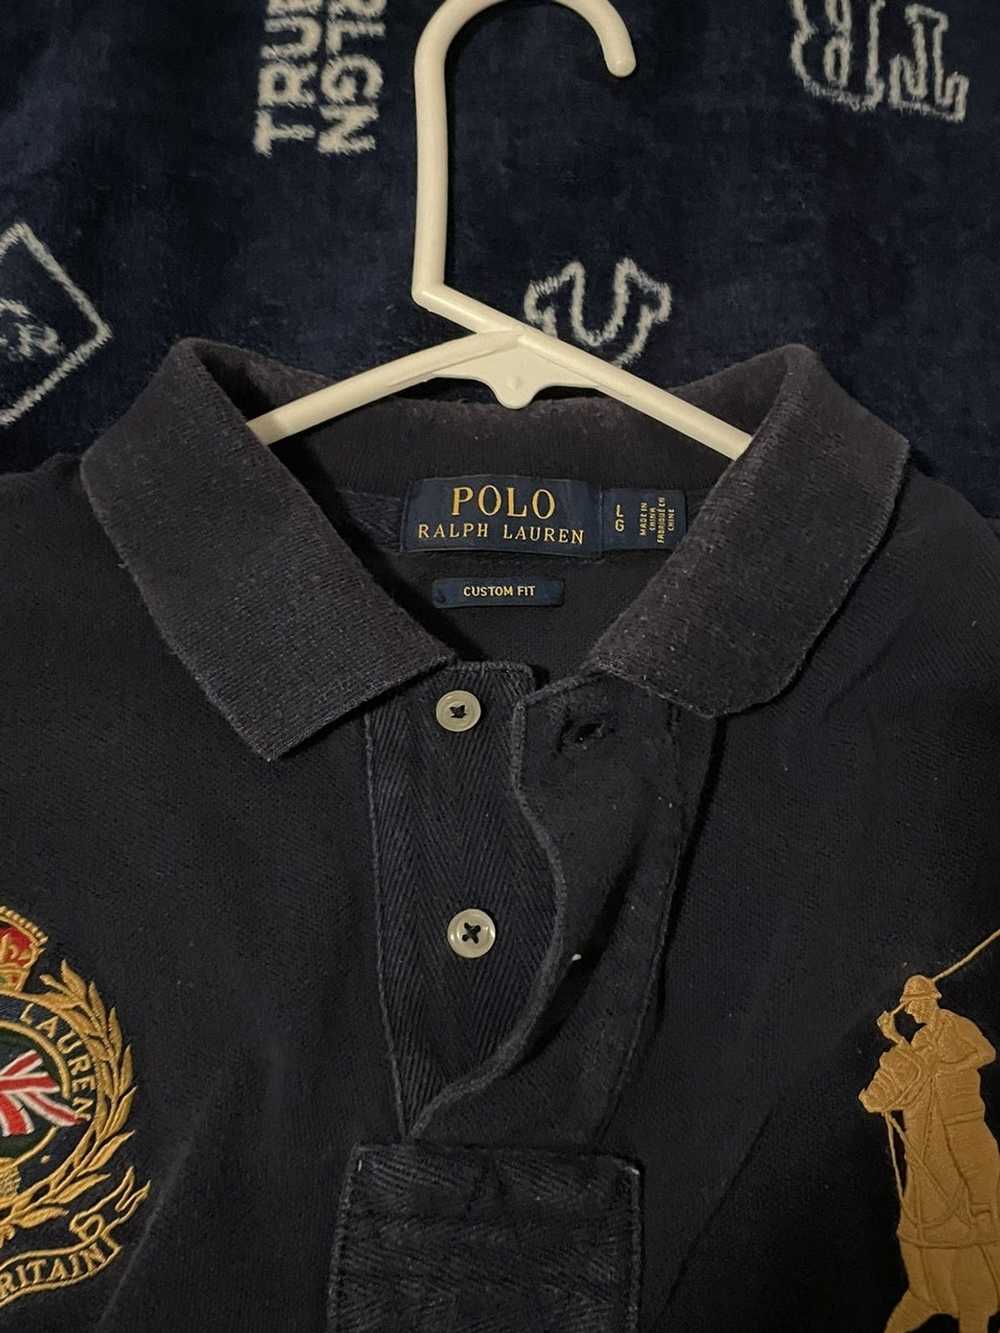 Polo Ralph Lauren Polo Ralph Lauren Polo shirt - image 2